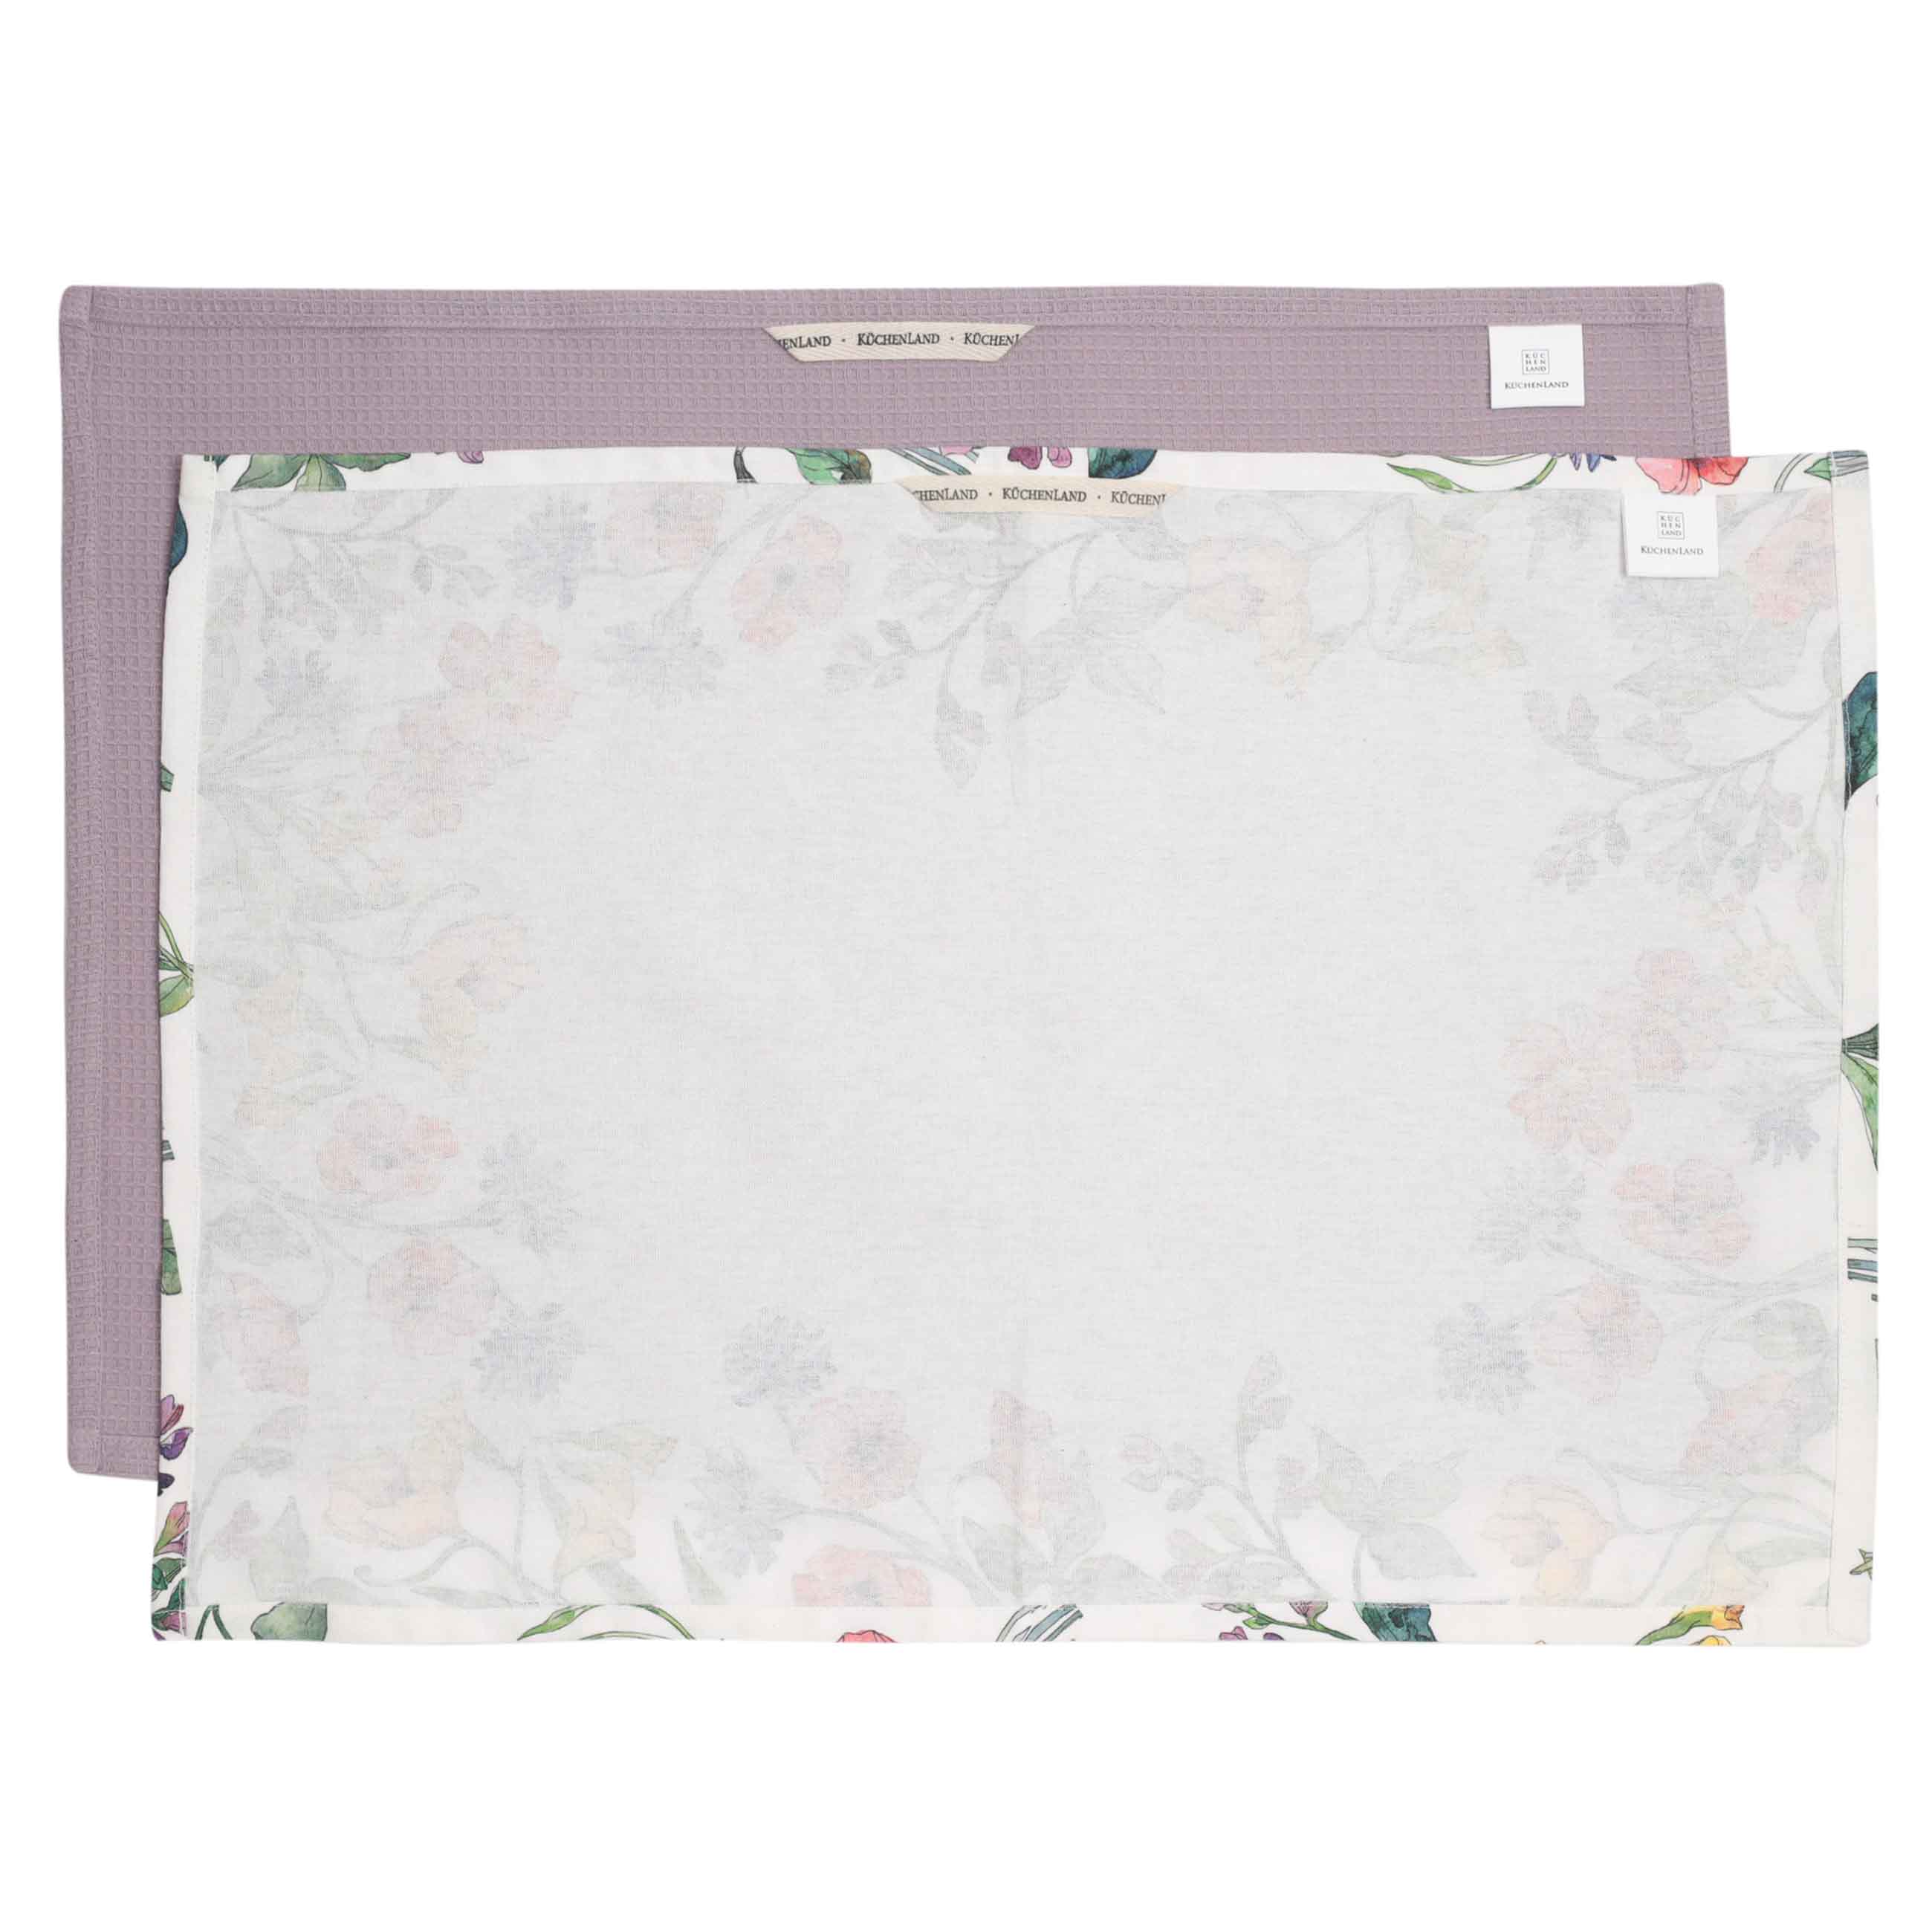 Kitchen towel, 40x60 cm, 2 pcs, cotton, white/purple, Flowers, Bloome изображение № 7